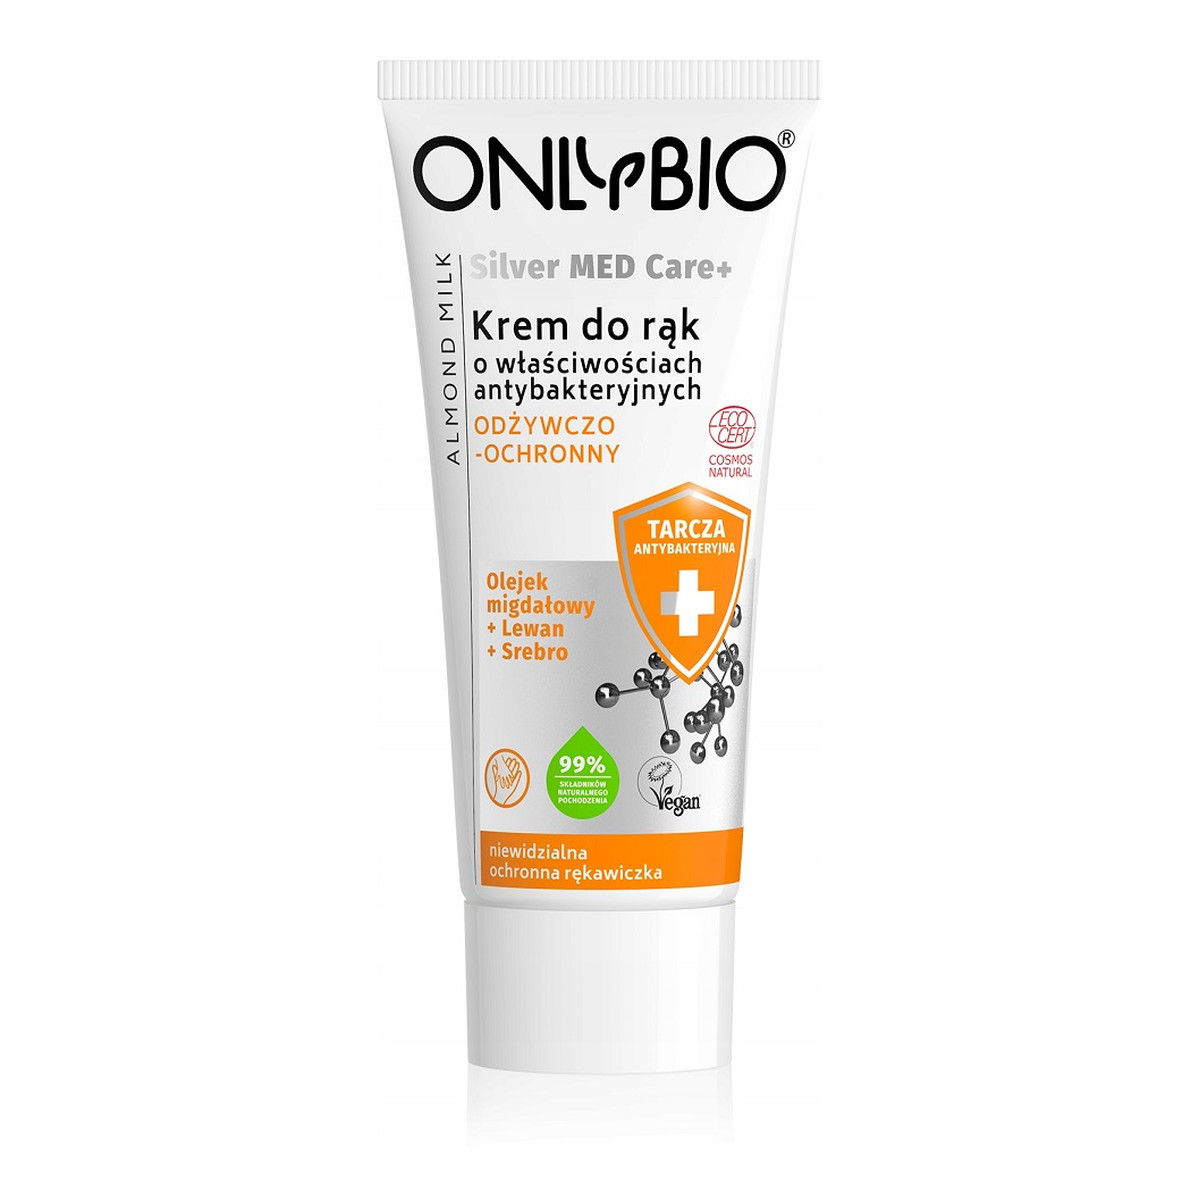 OnlyBio Silver Med Care+ Odżywczo-ochronny krem do rąk o właściwościach antybakteryjnych 50ml